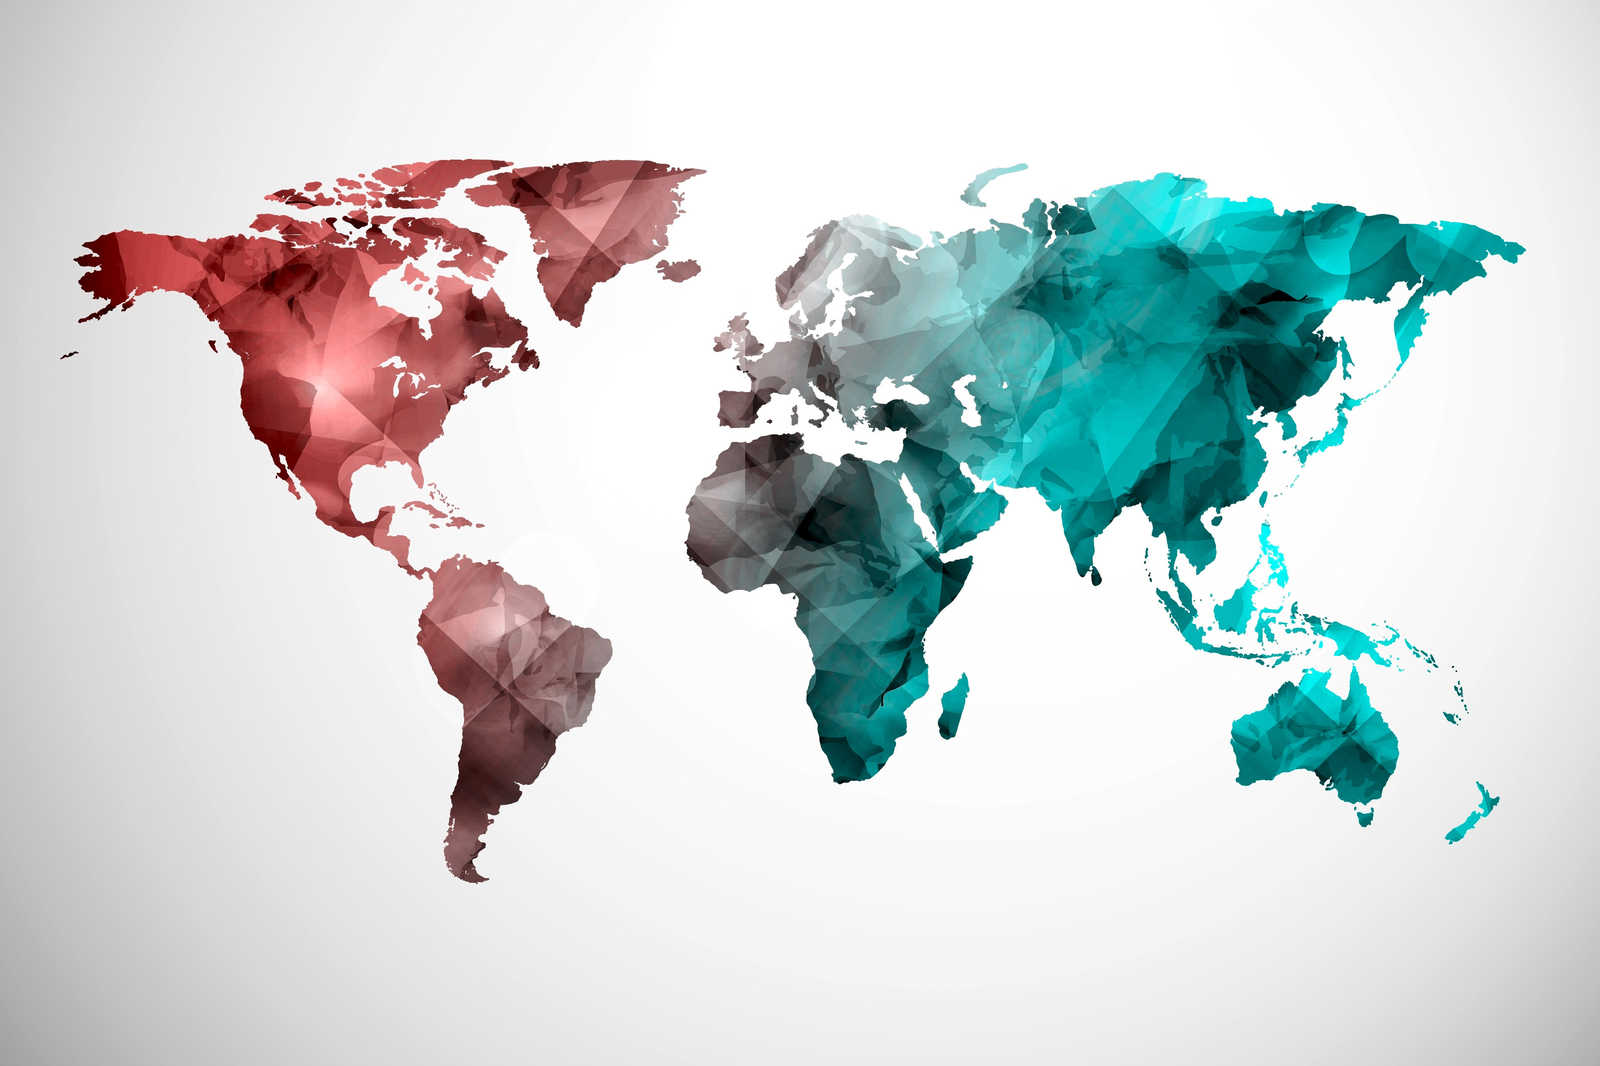             Leinwand mit Weltkarte aus grafischen Elementen | WorldGrafic 2 – 0,90 m x 0,60 m
        